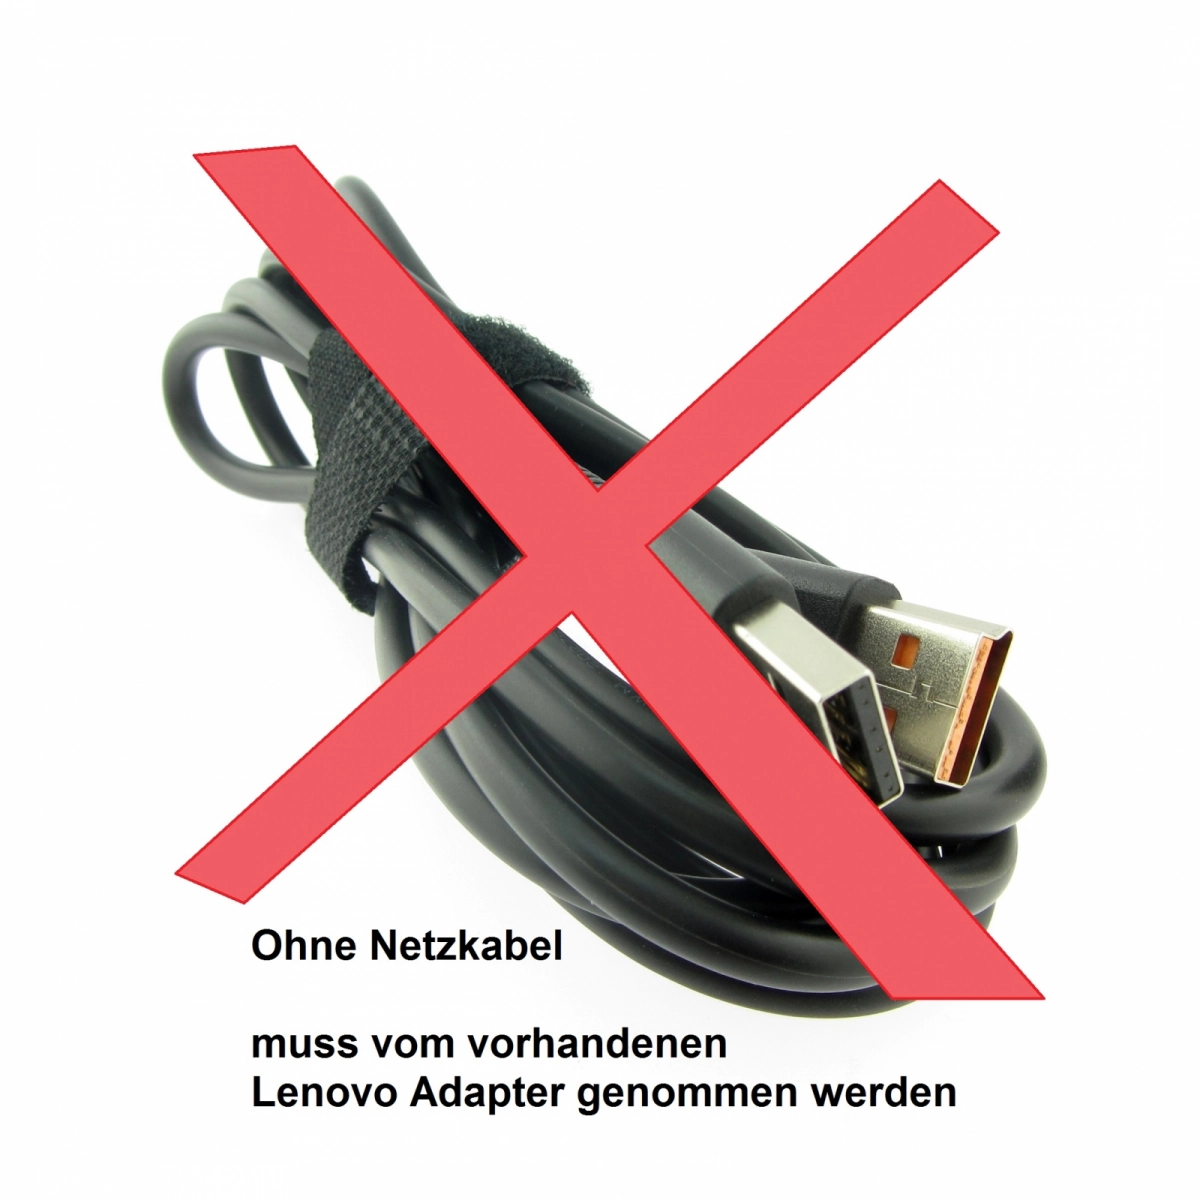 Original Netzteil für LENOVO ADL40WCC 36200581, 20V, 2A, Stecker USB, ohne USB-Kabel